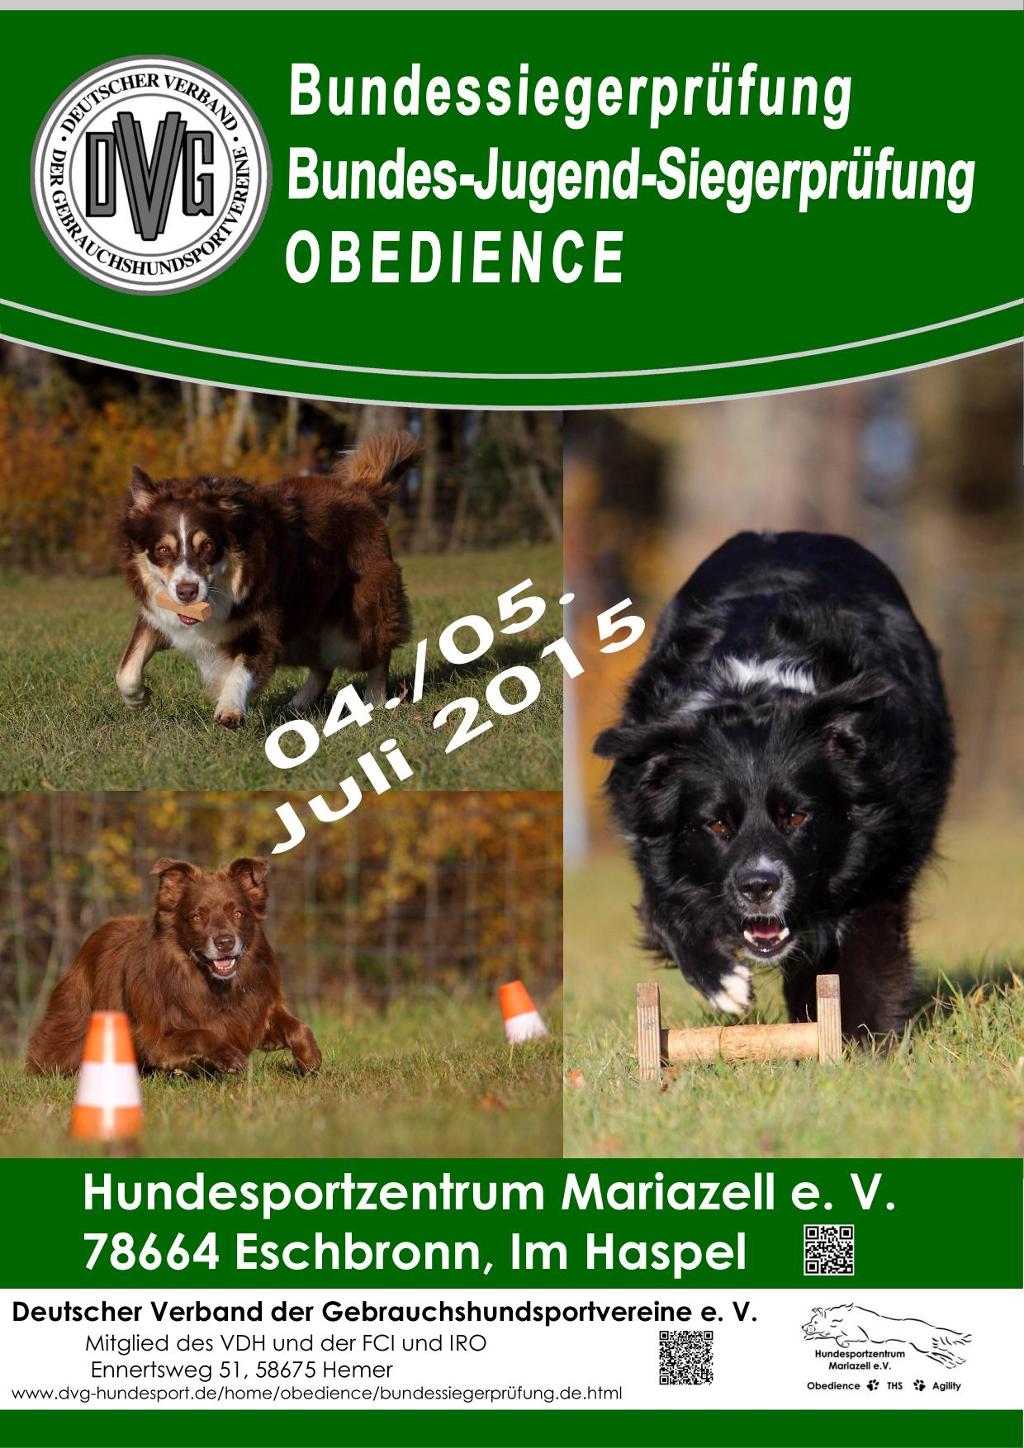 plakat-bsp-obedience-2015-2_1_1_kl.jpg